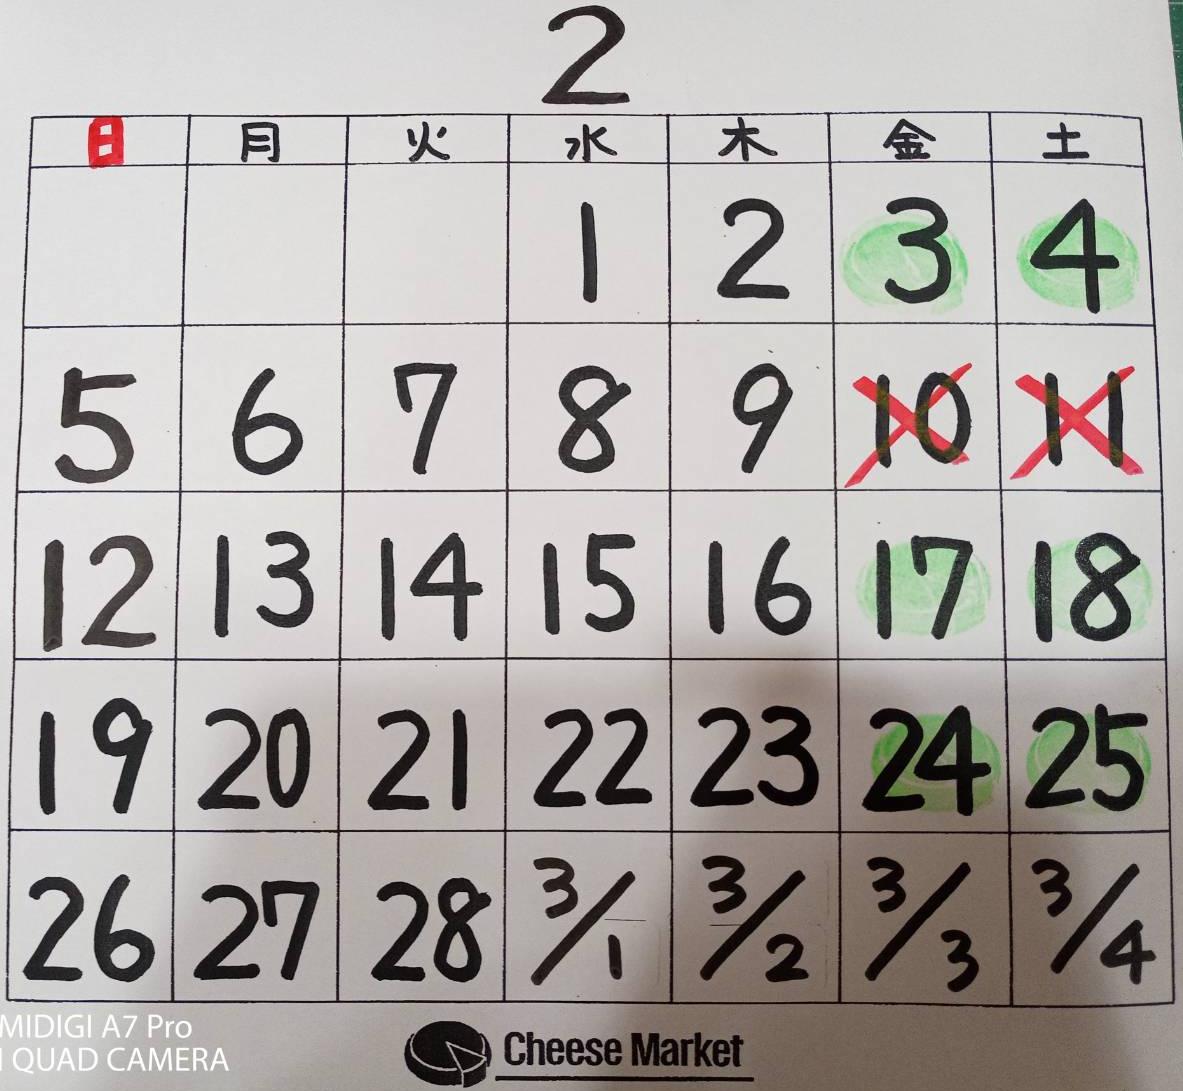 チーズマーケットカレンダー